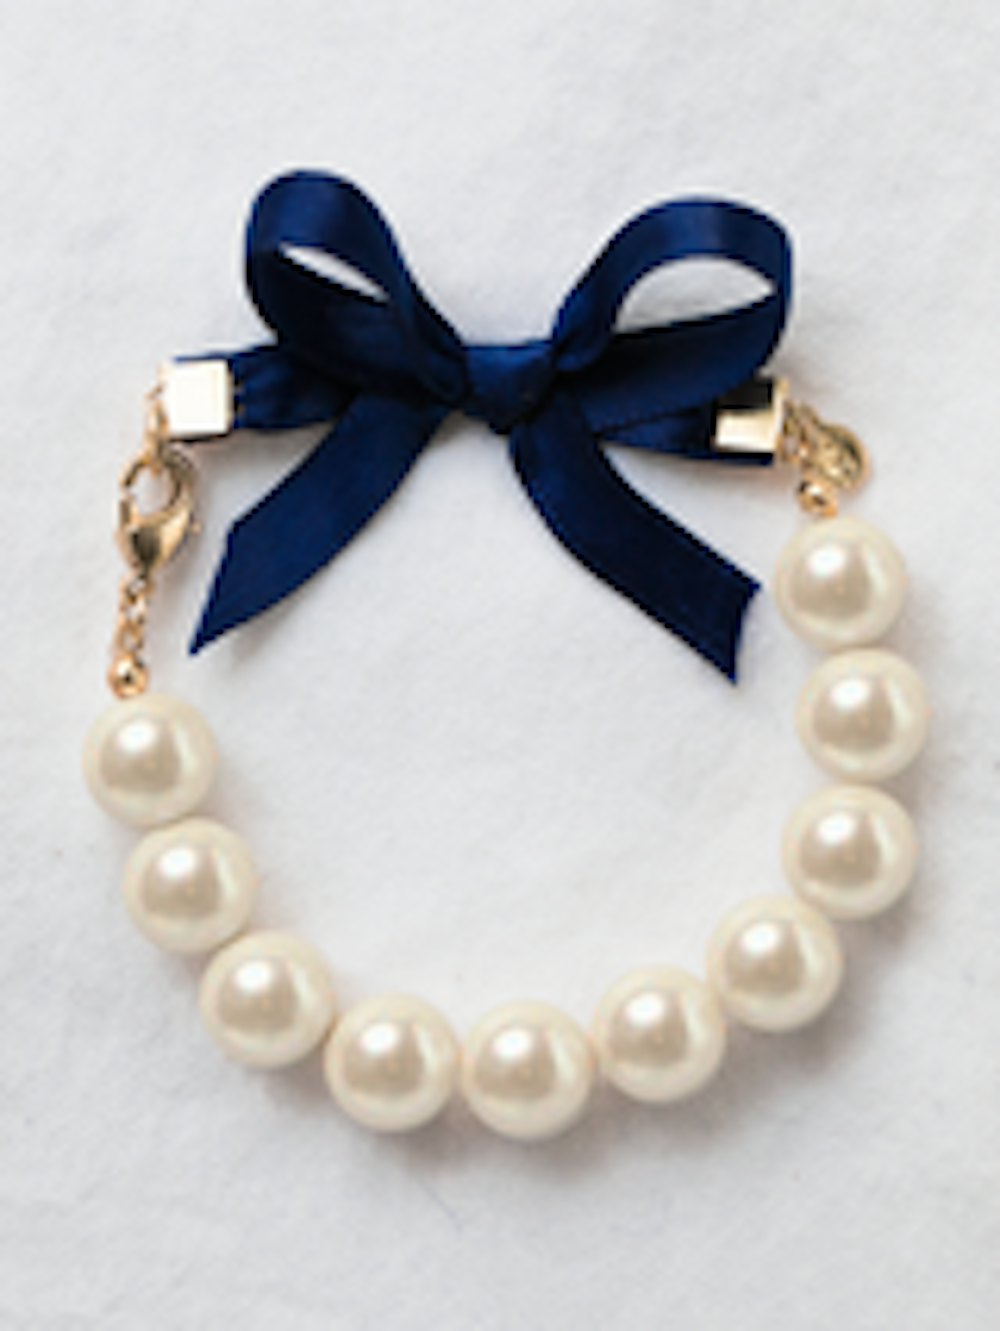 Classy Girls Wear Pearls